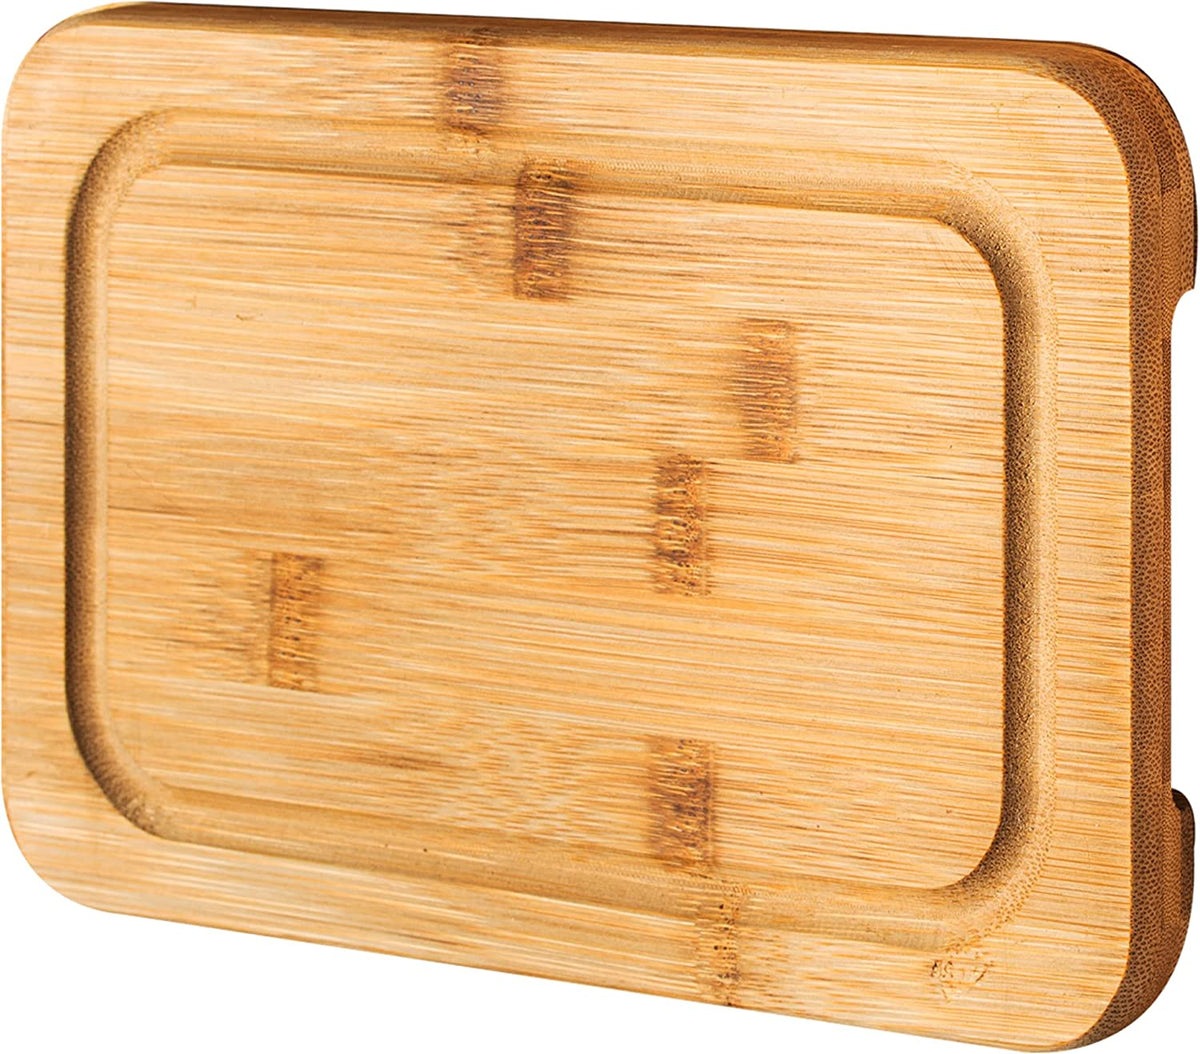 Organic Bamboo Cutting Board with Juice Groove (Small, 12 x 8)